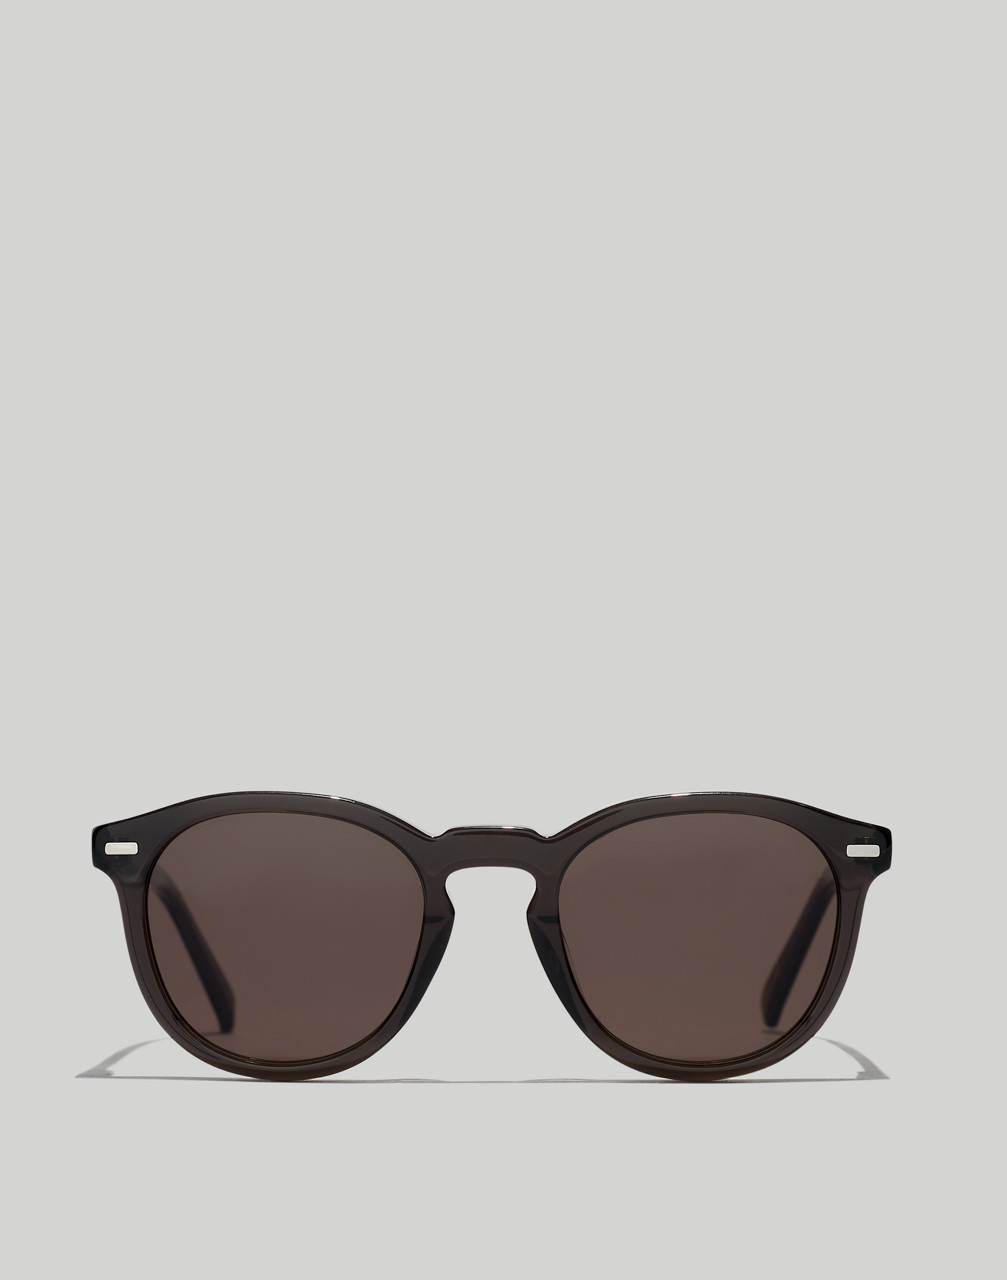 Mw Danford Sunglasses In True Black